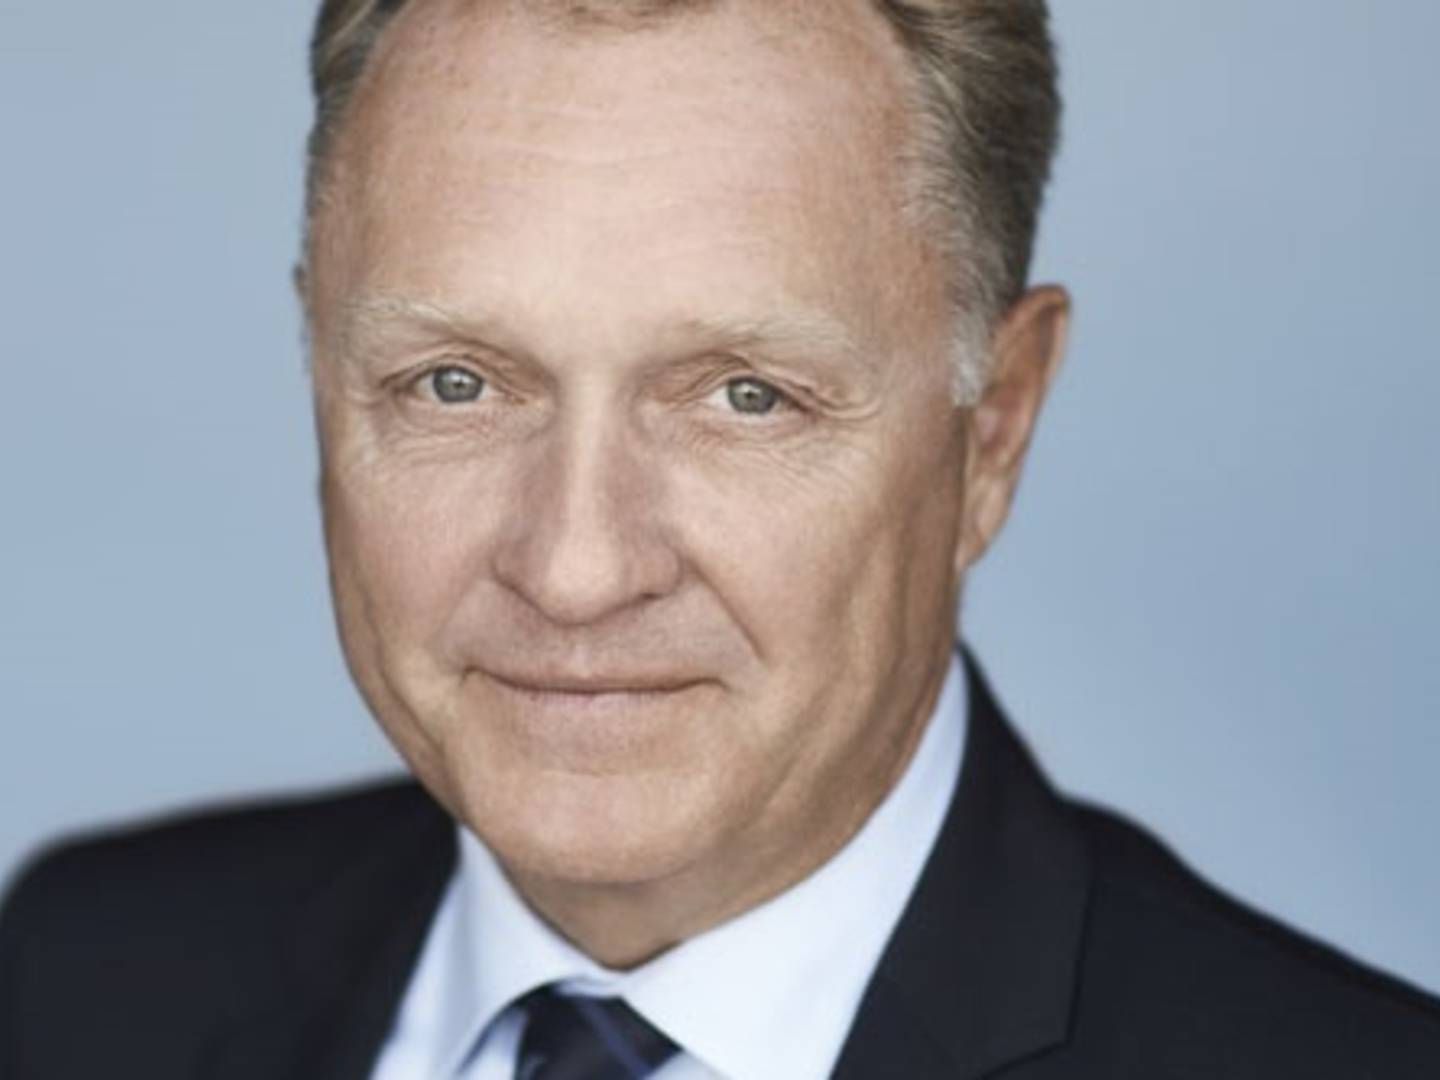 Carsten Dilling er bestyrelsesformand for MT Højgaard, som ifølge sine tidligere udmeldte forventninger, regner med at lande en omsætning på omkring 7,1 mia. kroner i 2021. Formanden mener, at MT Højgaard er klar til at gå efter endnu mere vækst med ny topchef ombord. | Foto: PR